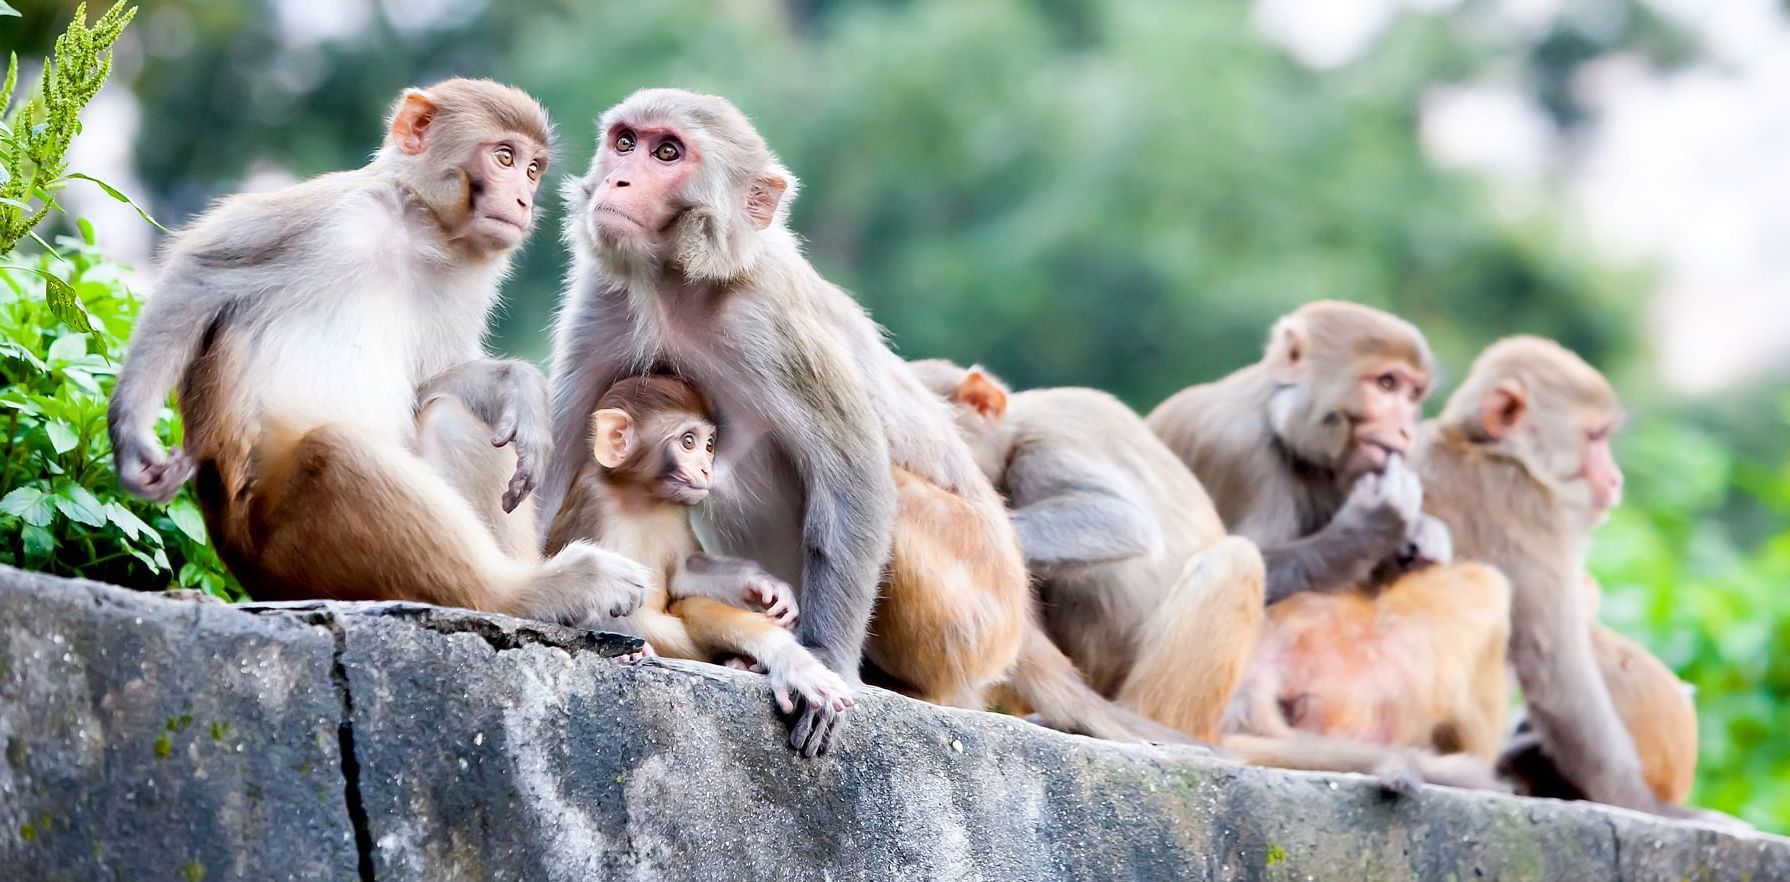 हिमाचल में बंदर घाटी कहां पाई जाती है?